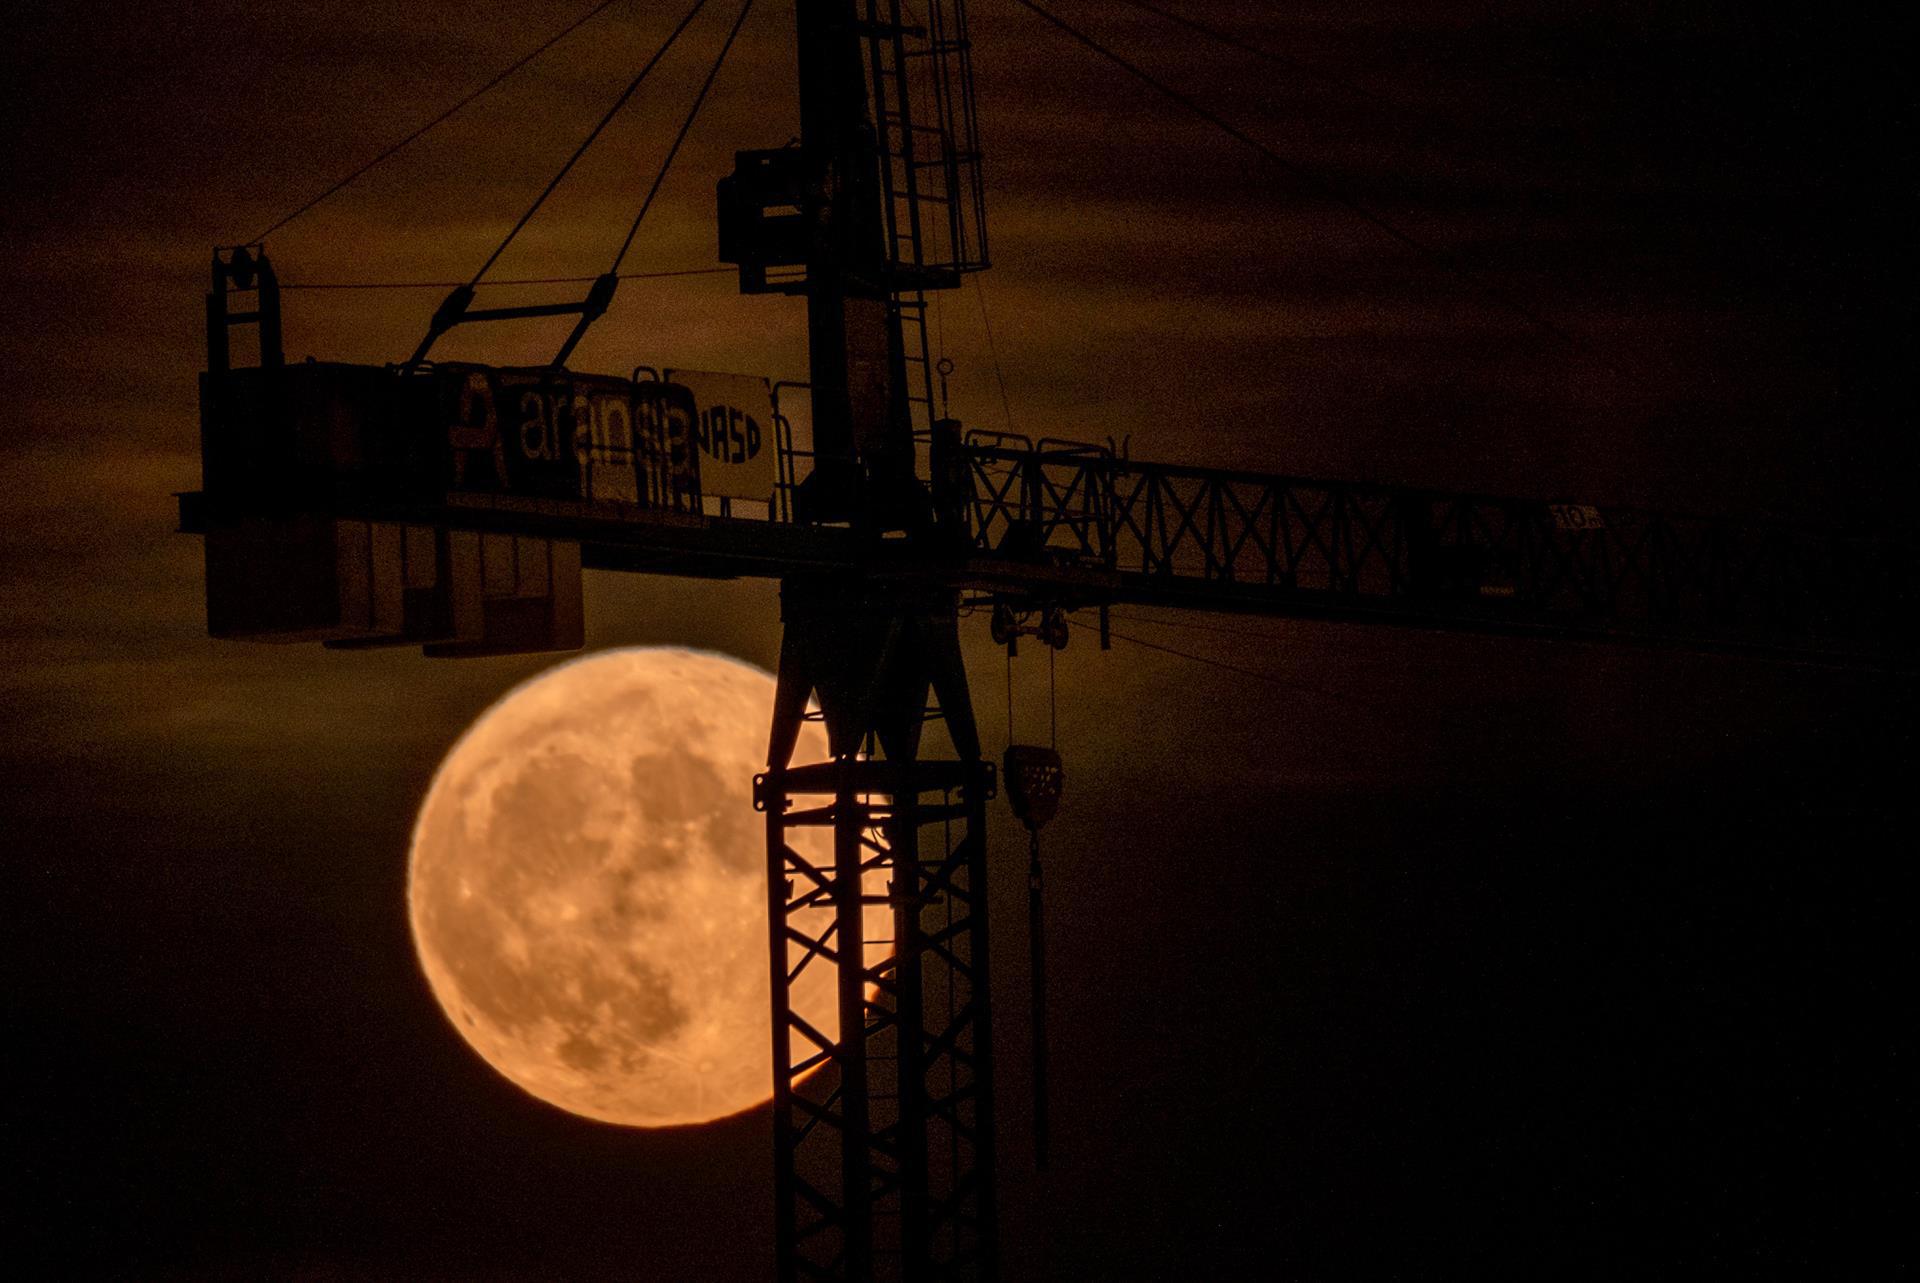 Superluna vista este jueves desde Logroño. La luna llena de julio llamada también Superluna de ciervo.